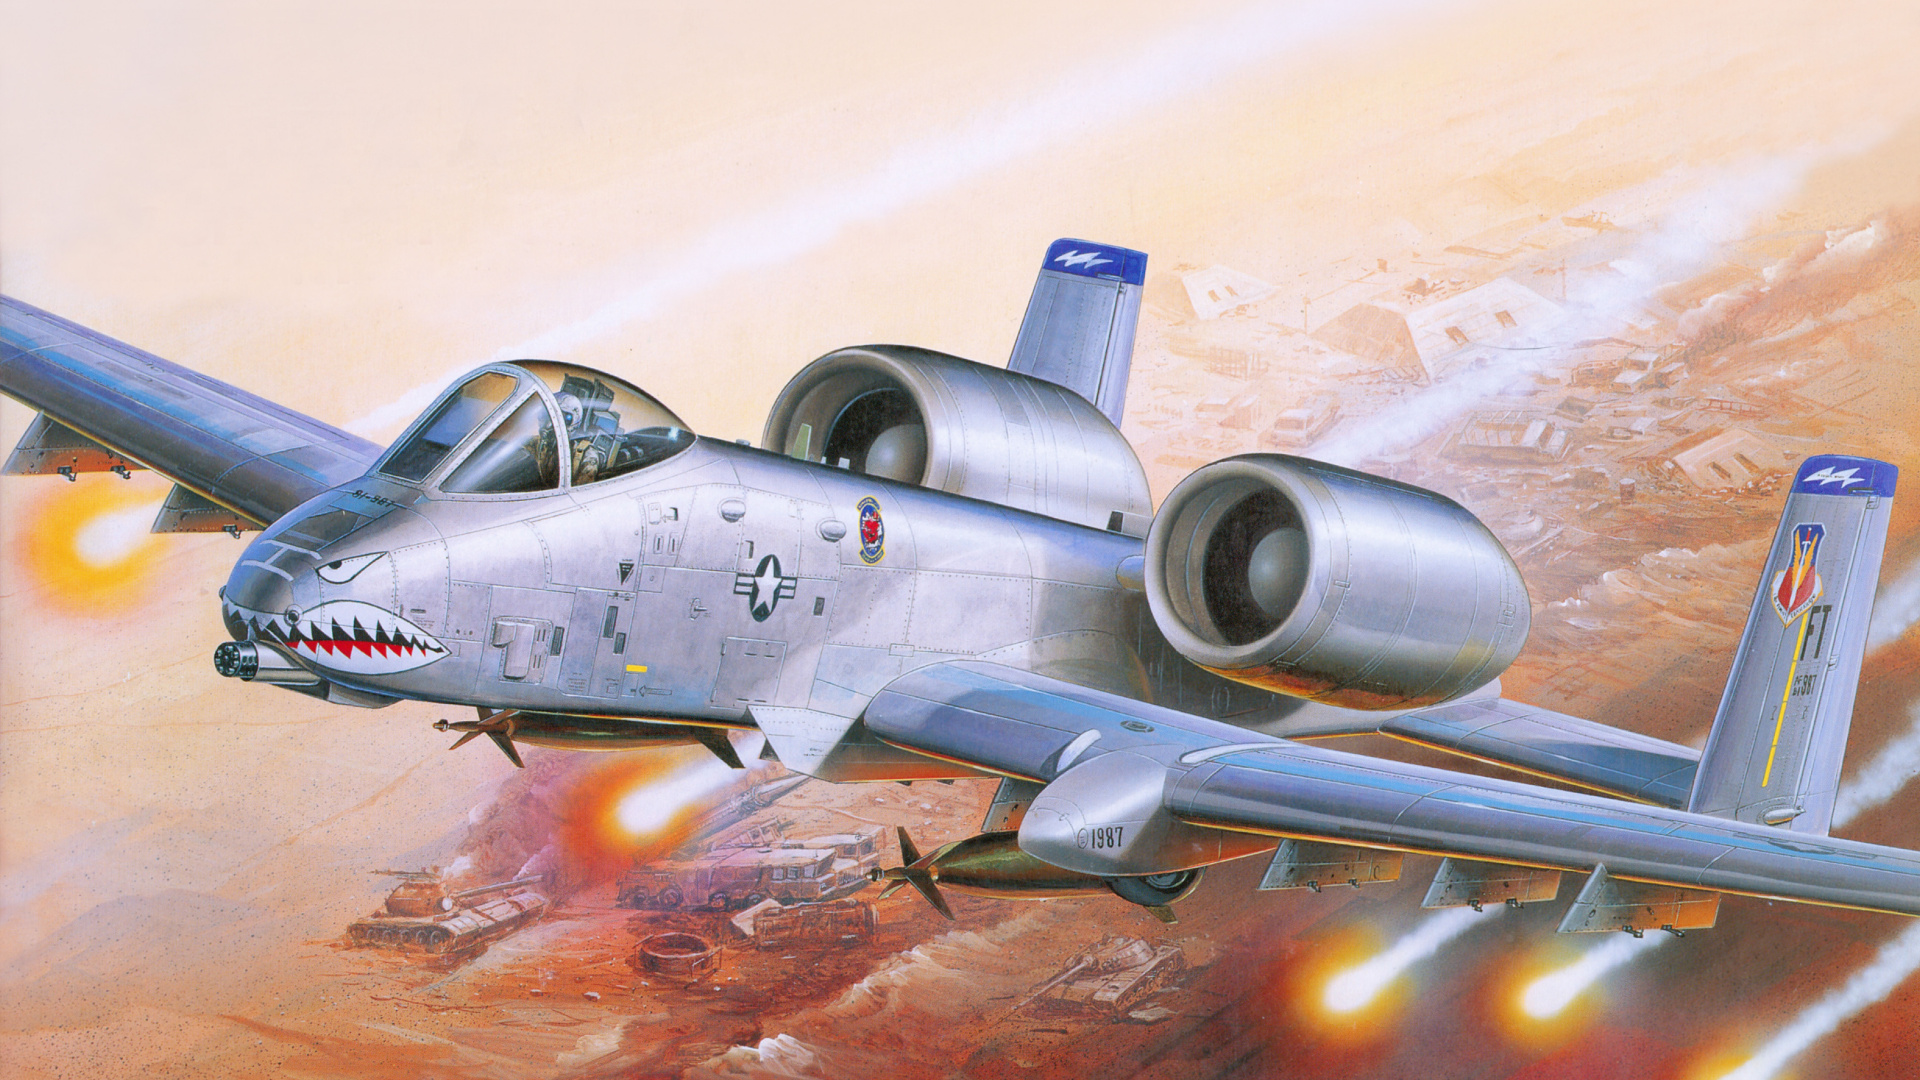 塑料模型, 航空, 喷气式飞机, 军用飞机, 空军 壁纸 1920x1080 允许